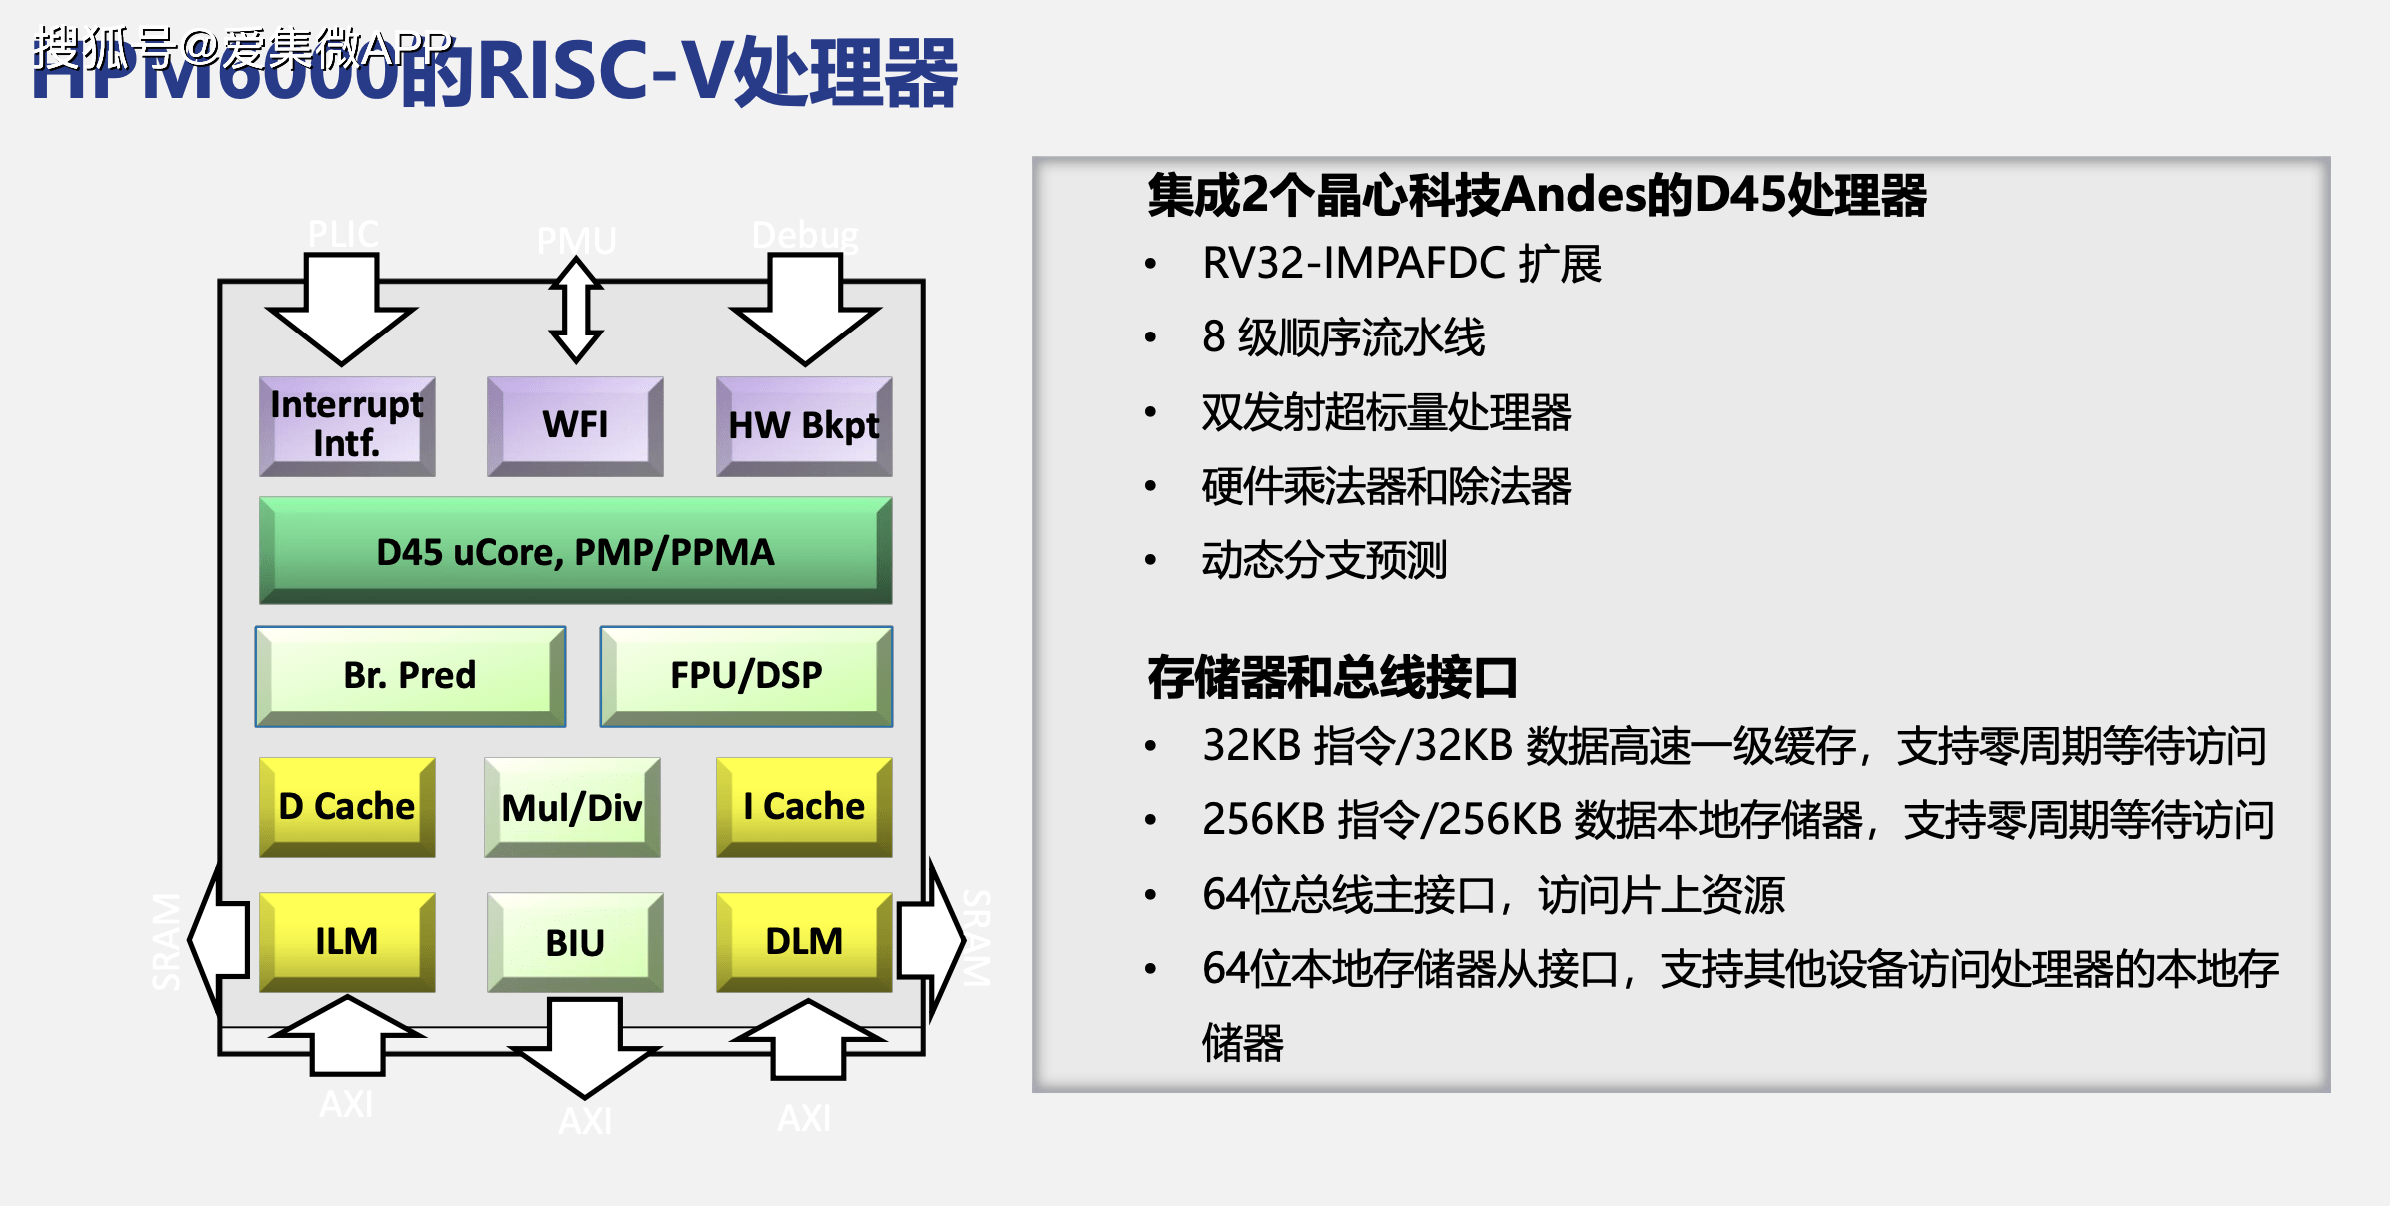 原创             先楫半导体：HPM6000系列RISC-V通用MCU产品填补国内高端MCU空白